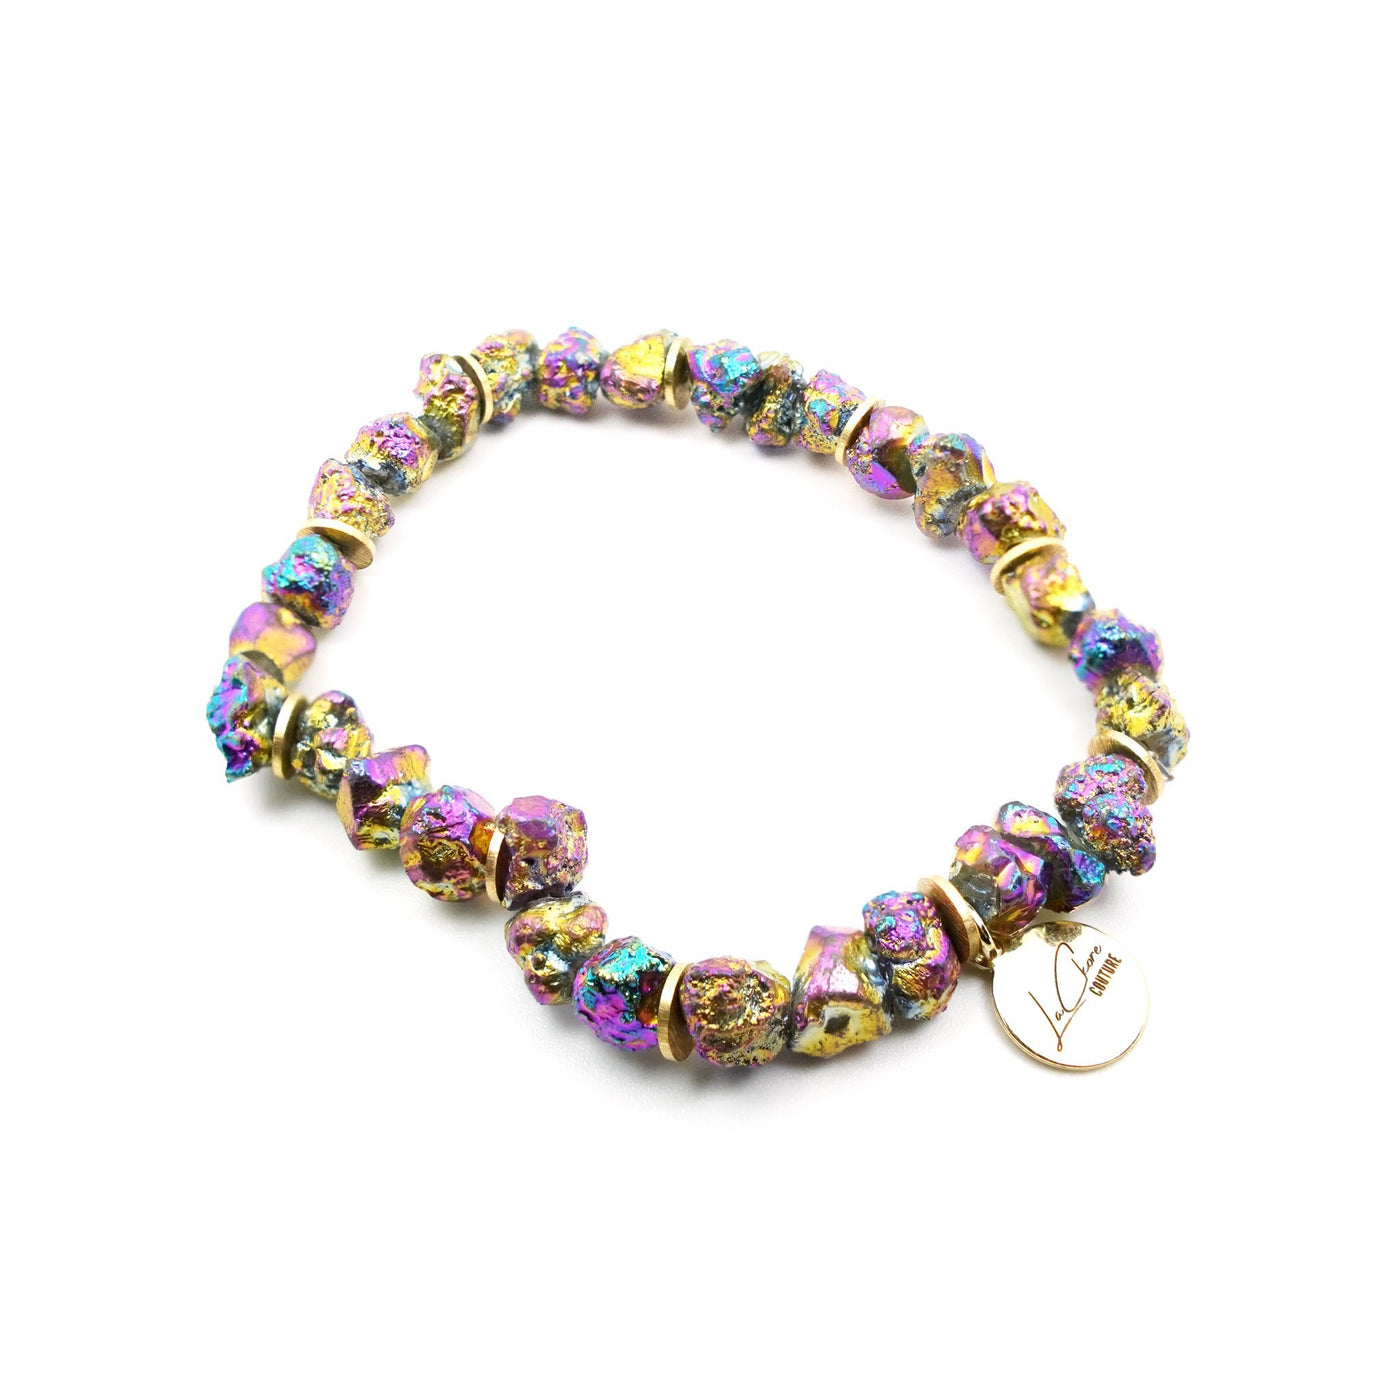 Rainbow Rock Candy Bracelet LaCkore Couture